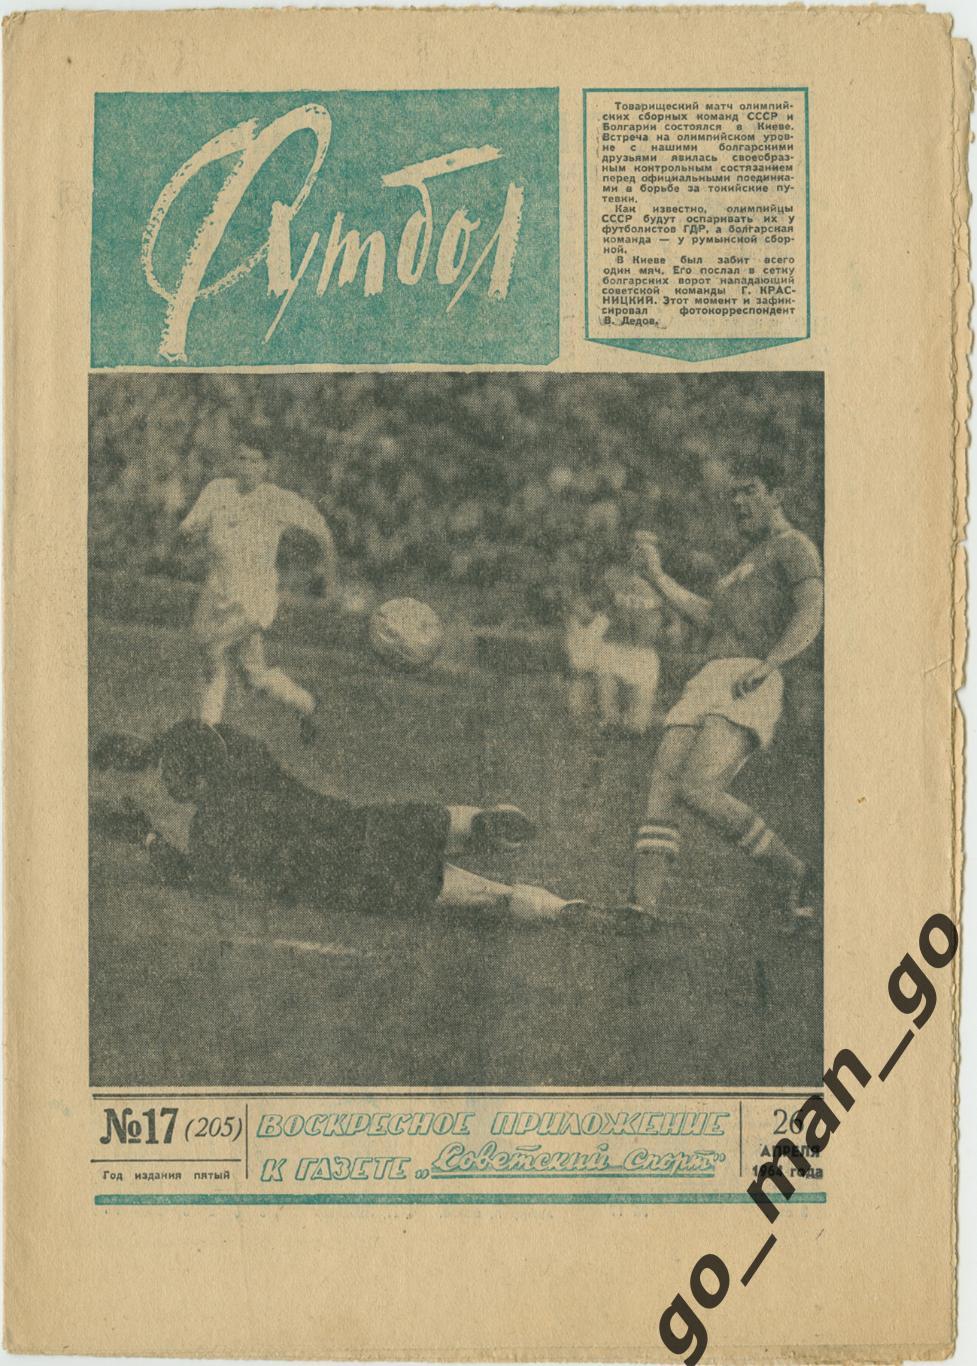 Еженедельник Футбол 1964, № 17.